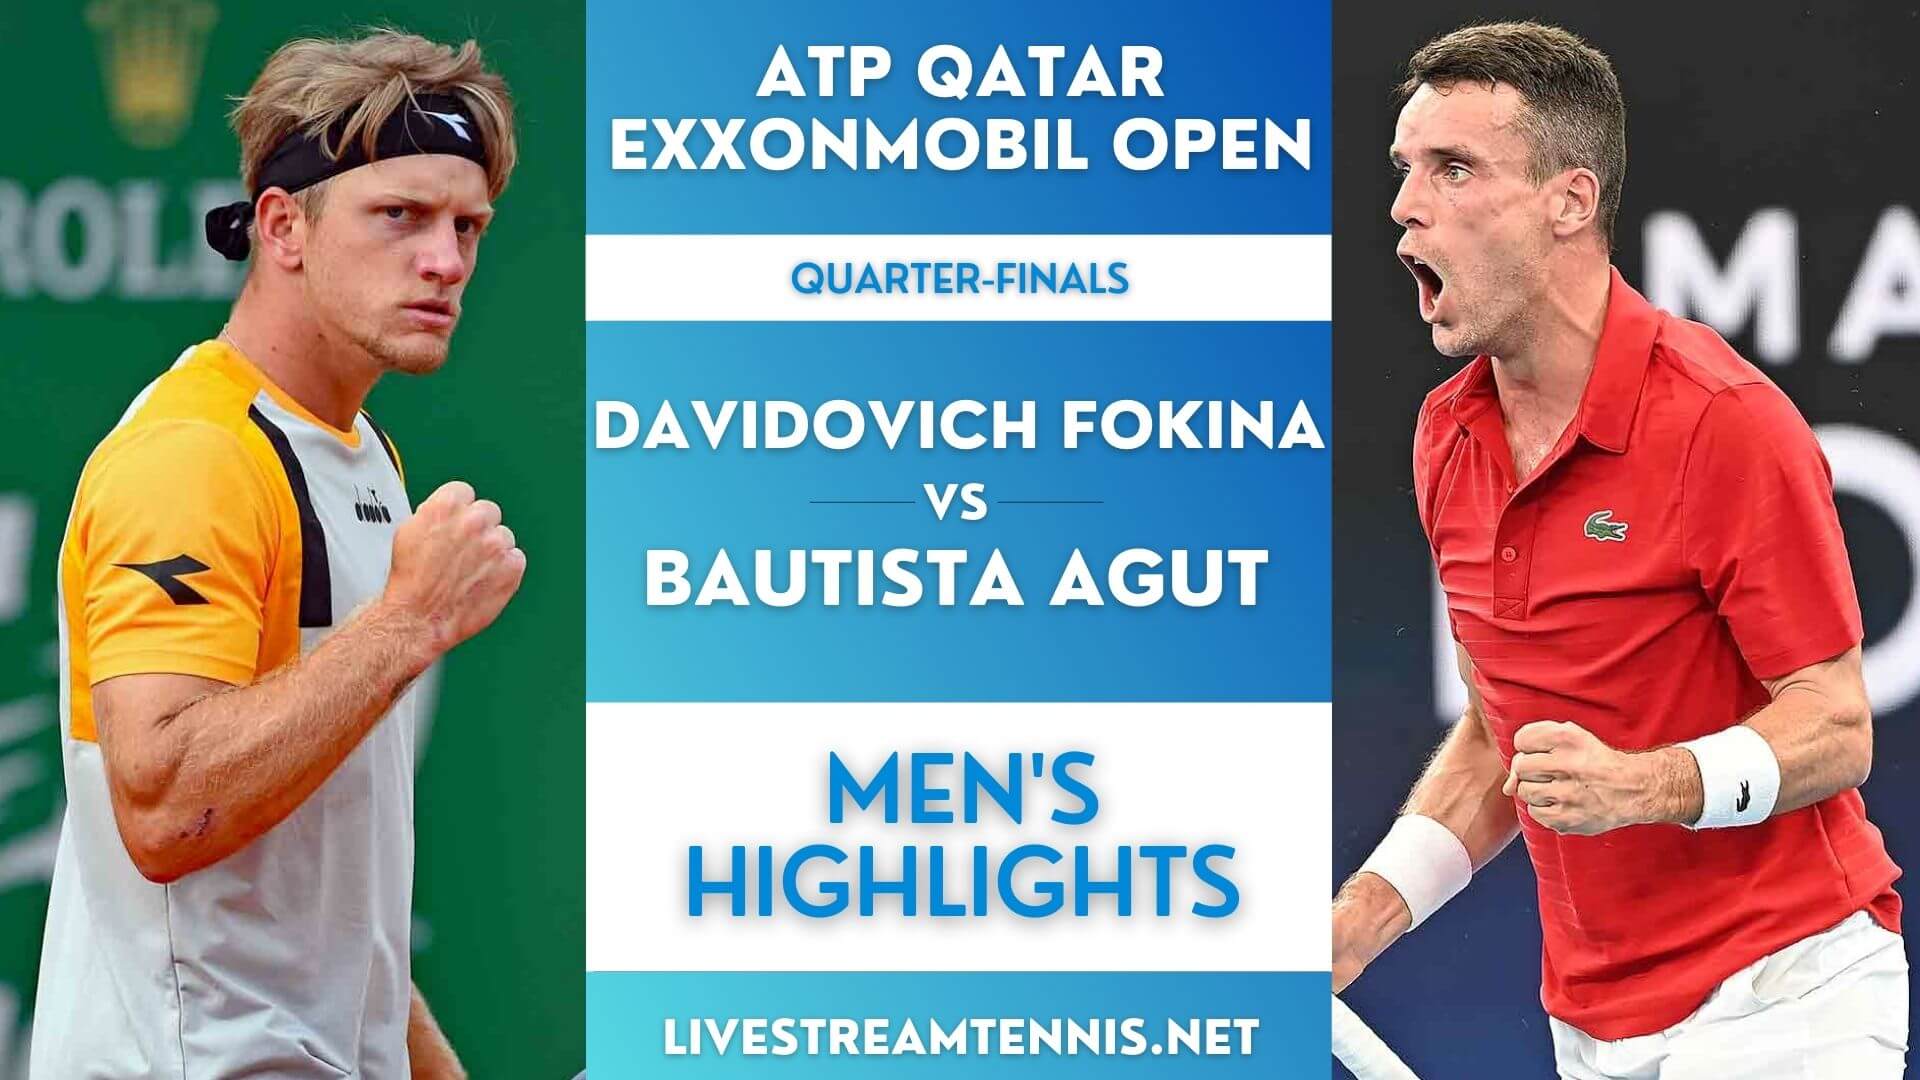 Qatar Open ATP Quarterfinal 2 Highlights 2022